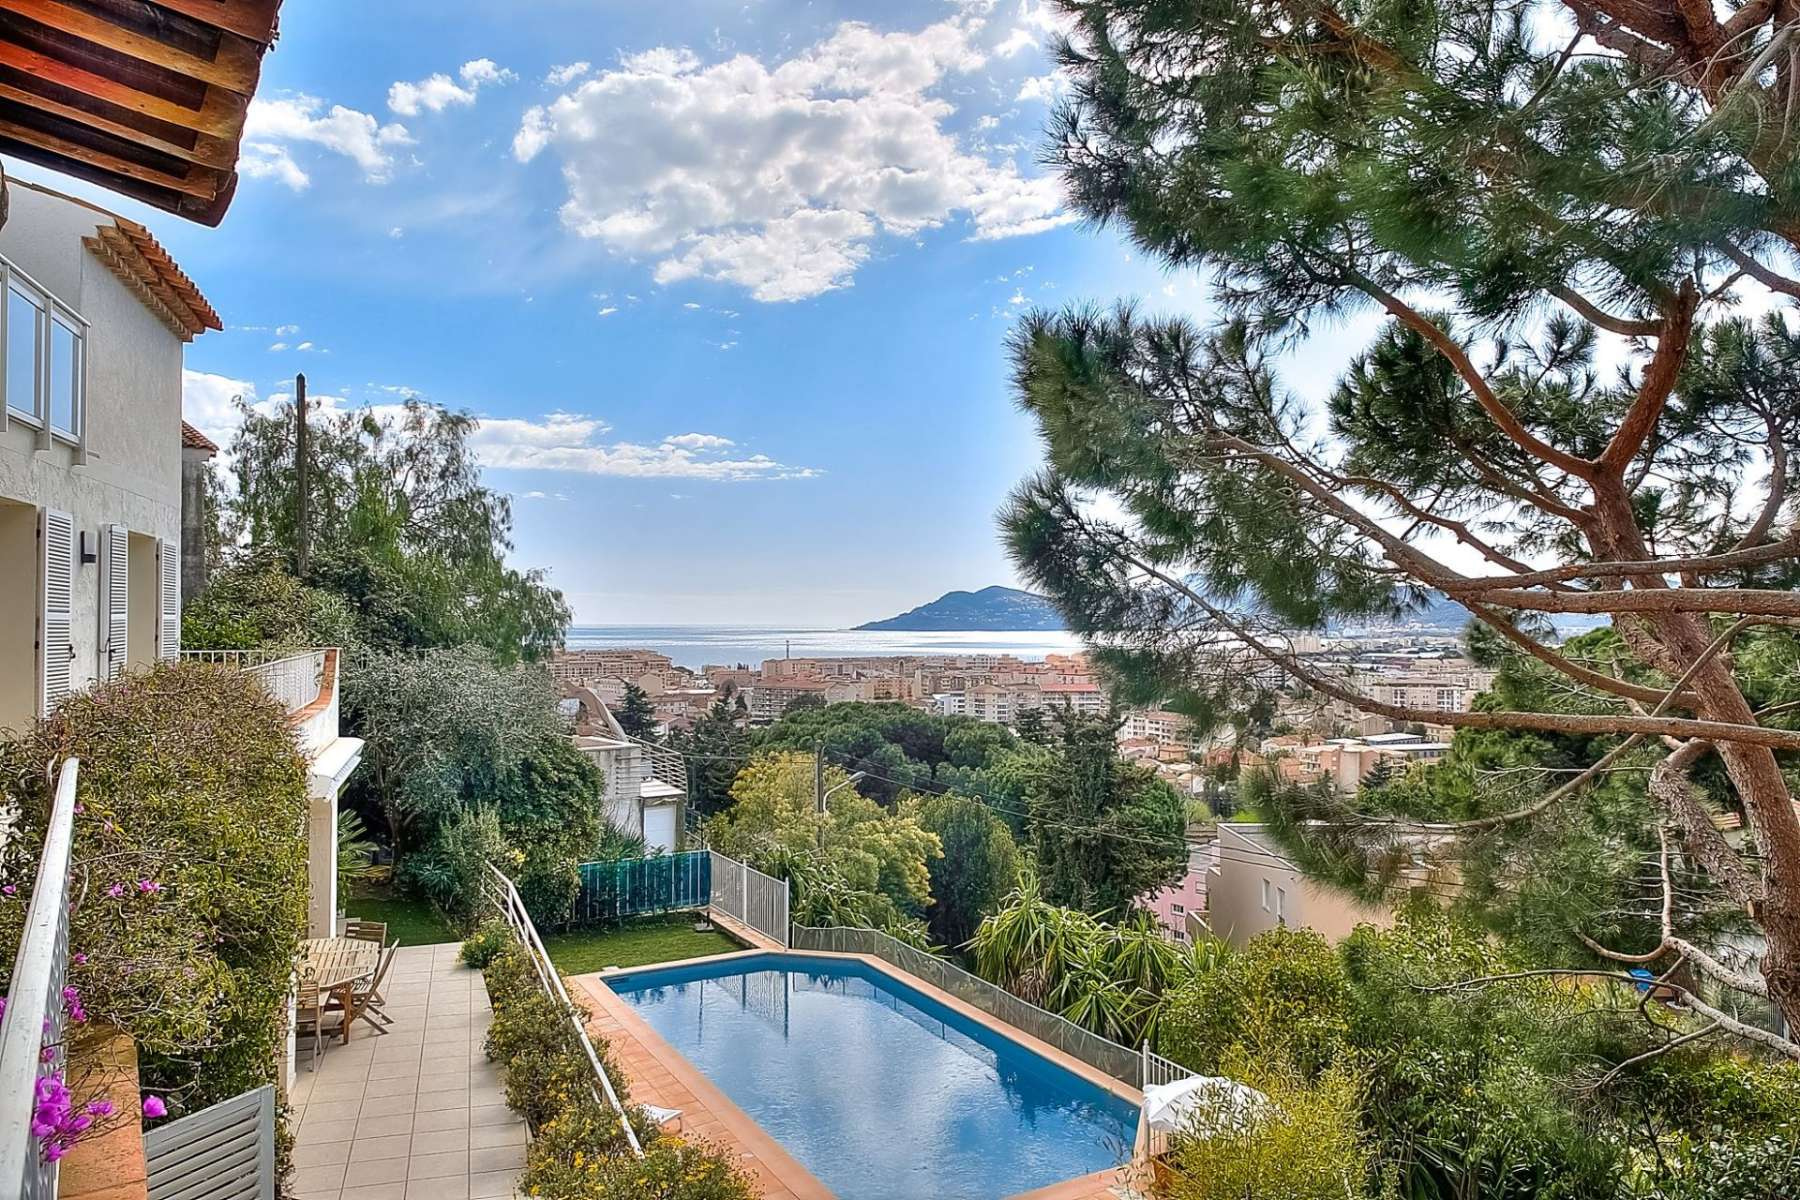 Sea view villa in Cannes close to Croisette beach